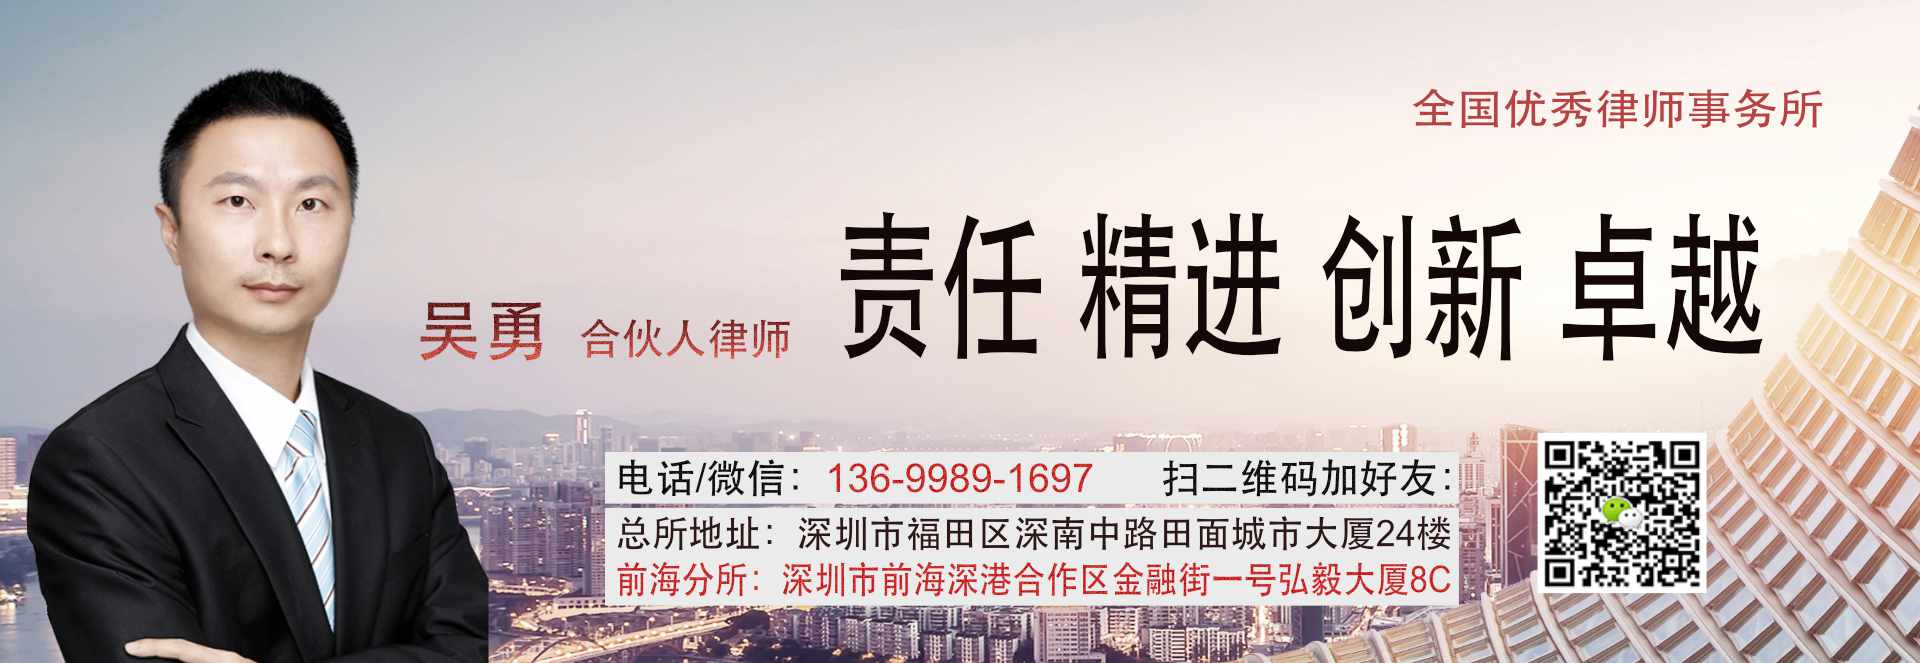 深圳市律师协会律师担任破产清算案件管理人业务指导标准